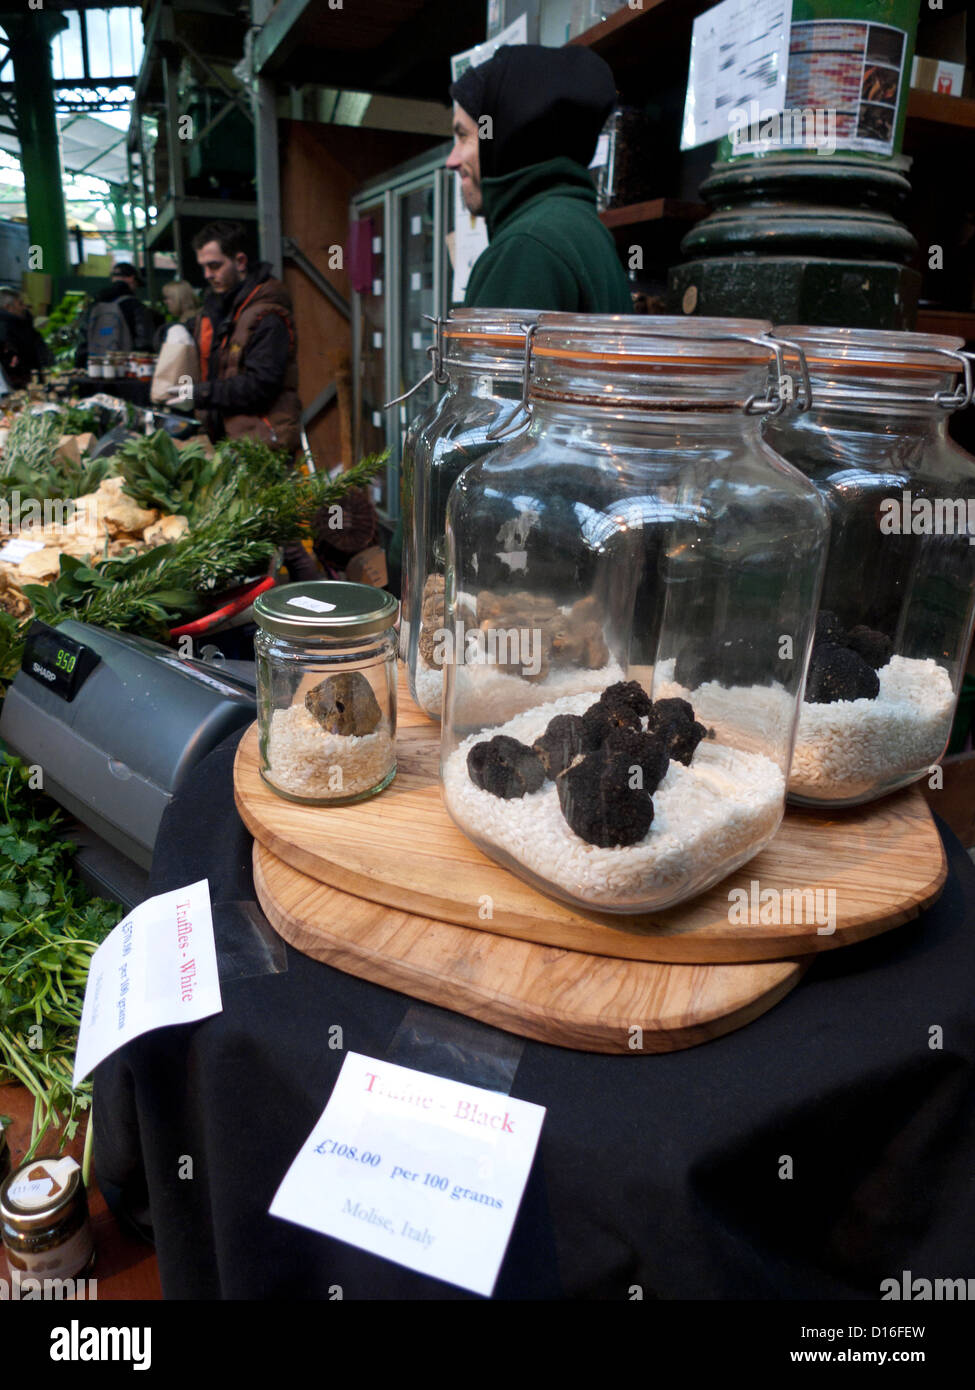 Schwarz / weiß frische Trüffel aus Molise Italien angezeigt in Gläsern Borough Market, London Bridge, London, UK KATHY DEWITT Stockfoto